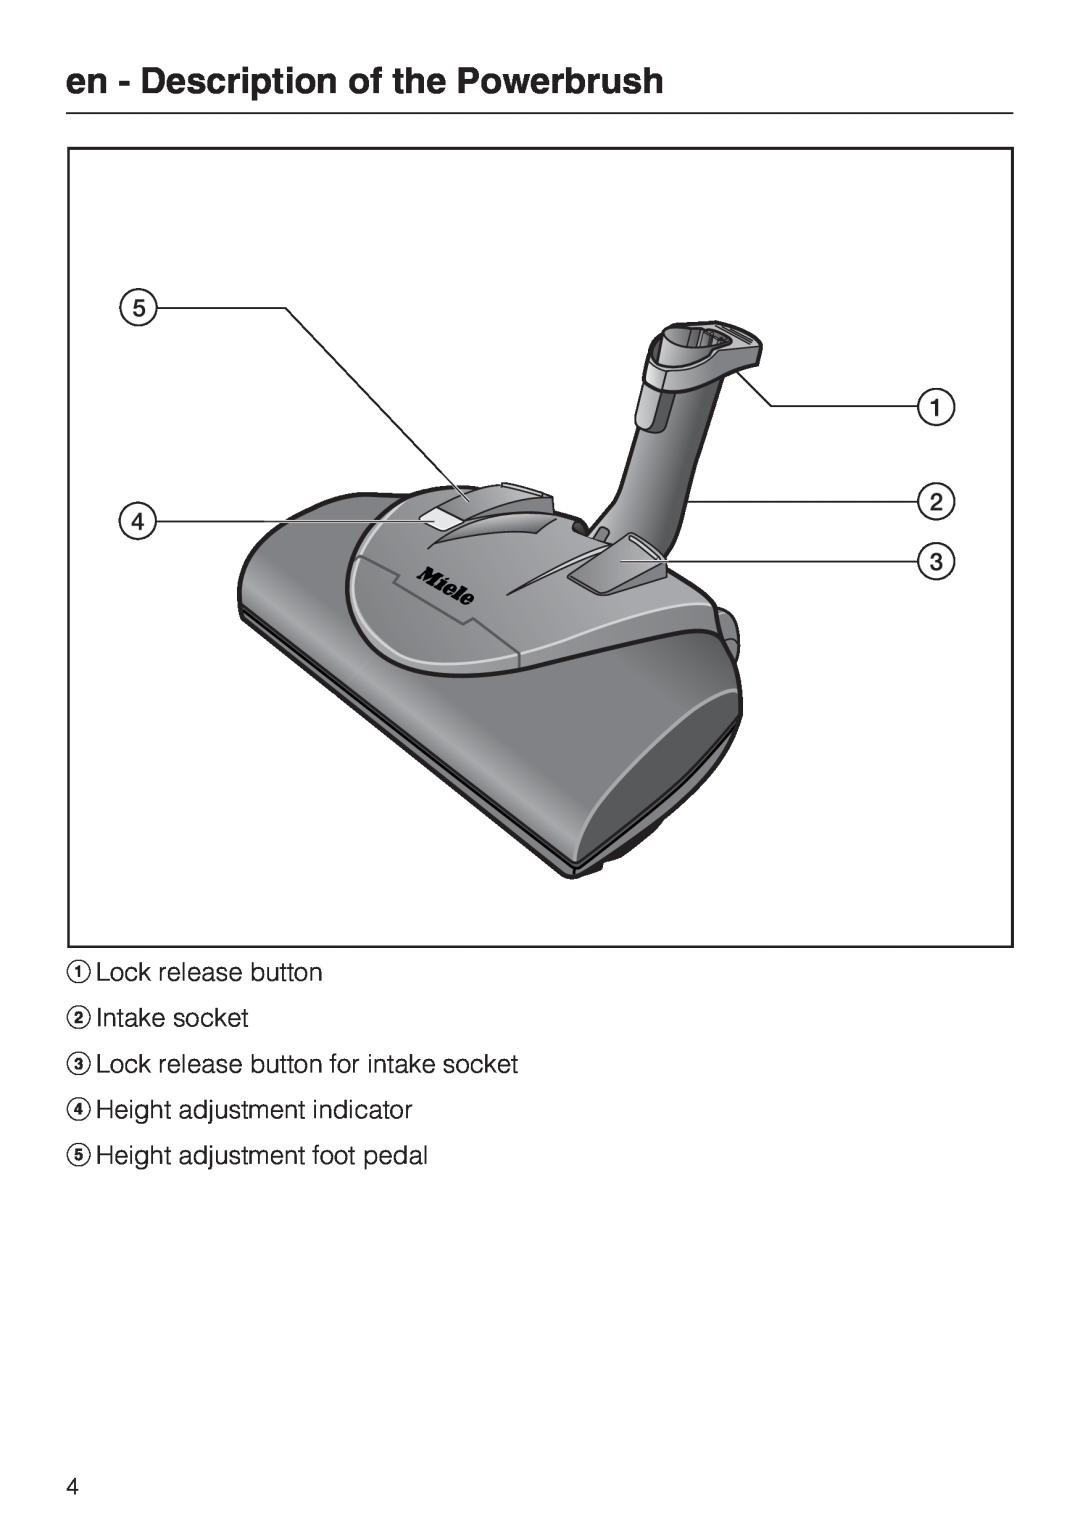 Miele SEB 228 en - Description of the Powerbrush, Lock release button Intake socket, Lock release button for intake socket 